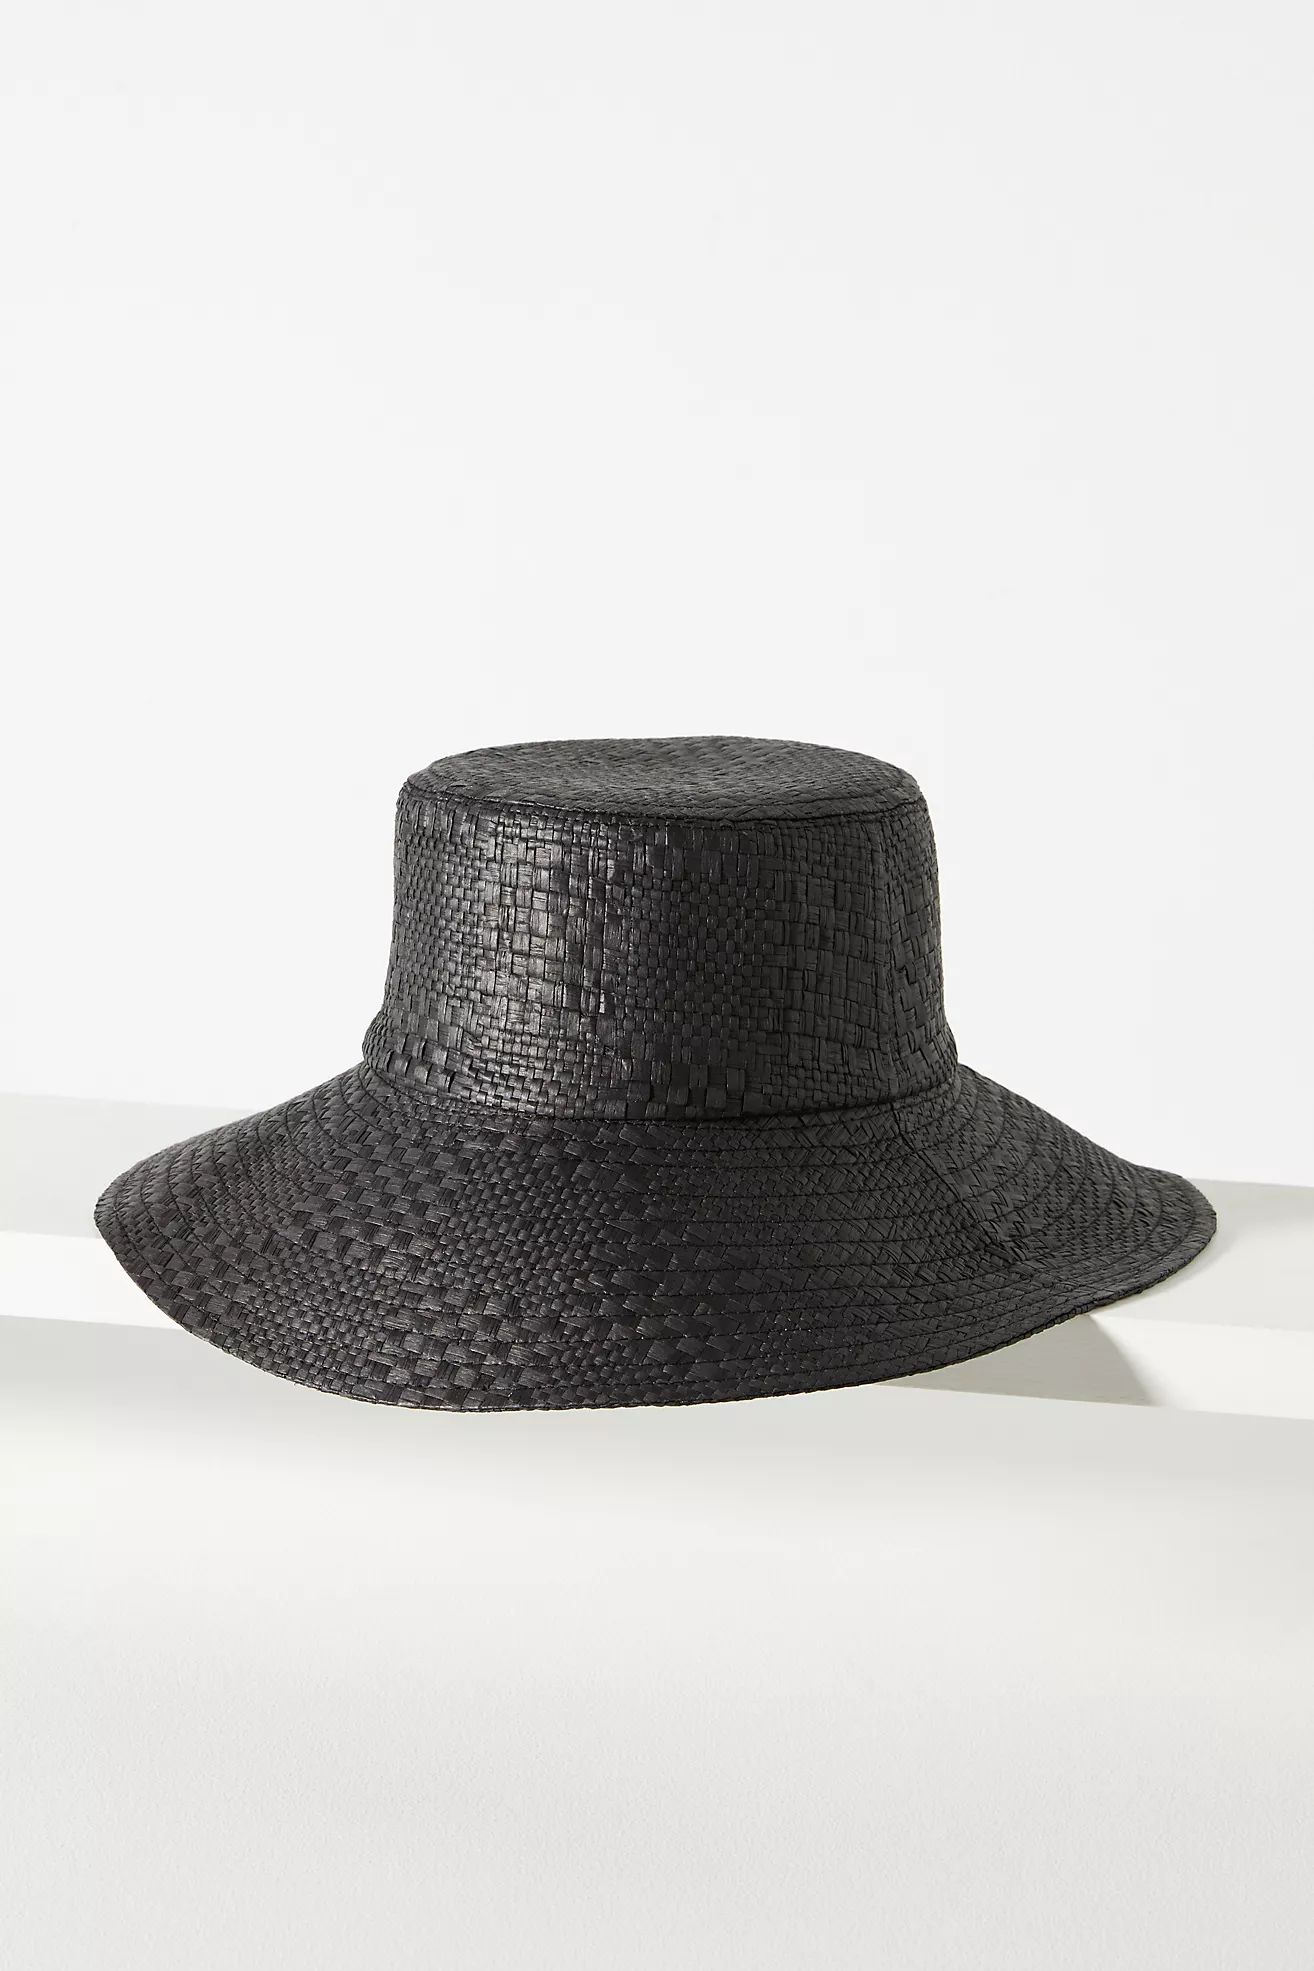 San Diego Hat Co. Checkered Straw Bucket Hat | Anthropologie (US)